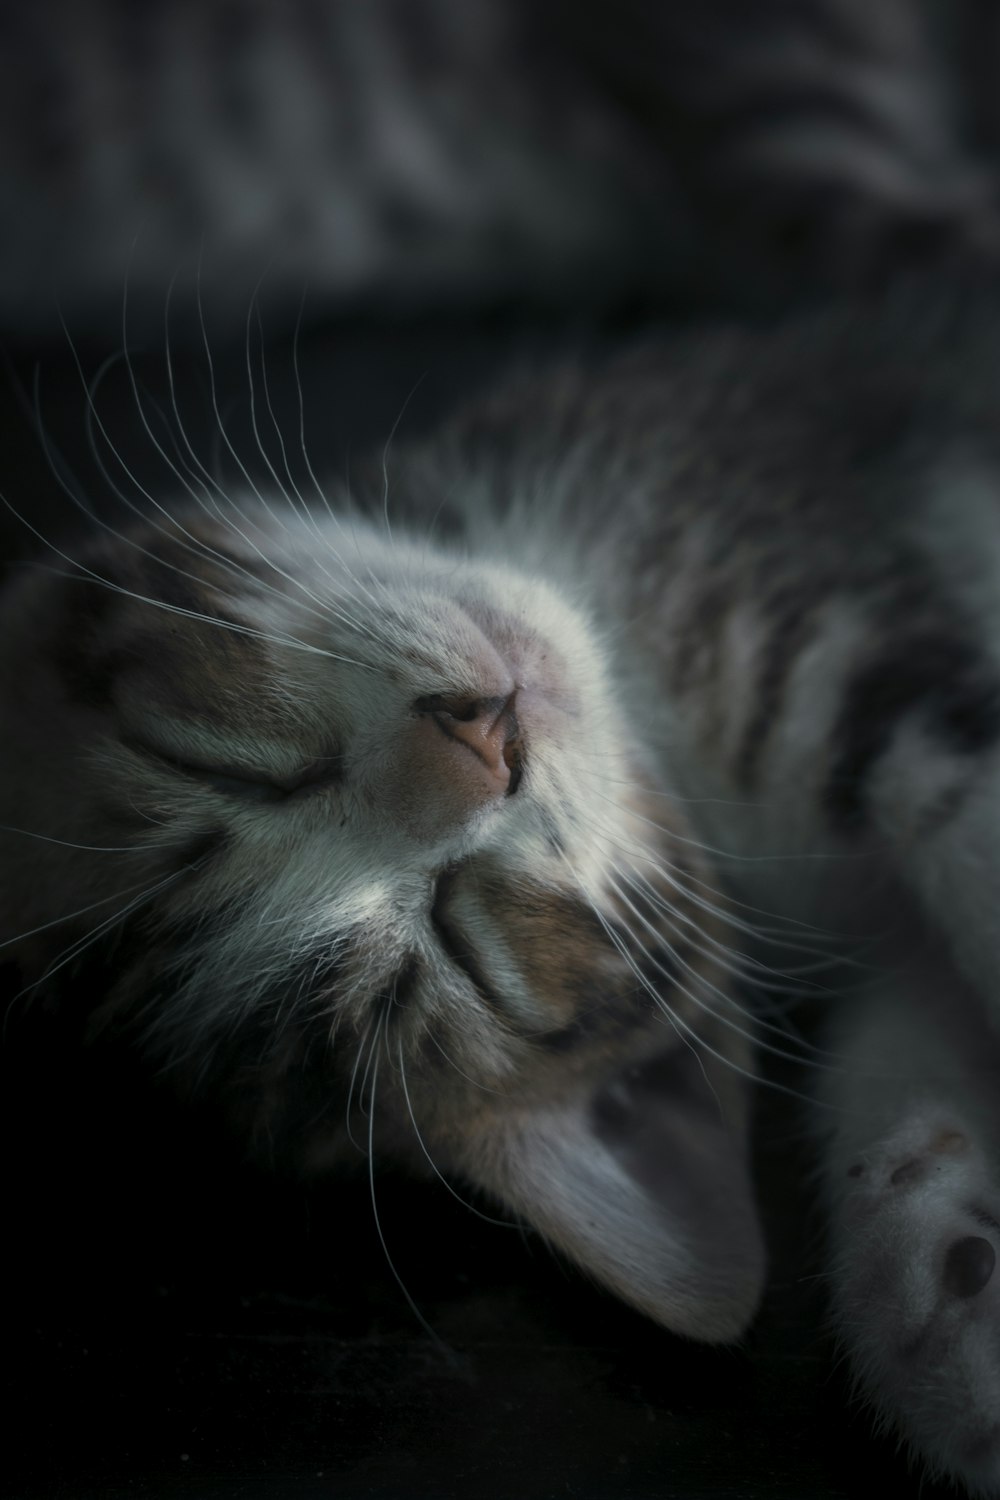 Un gato gris y blanco durmiendo boca arriba